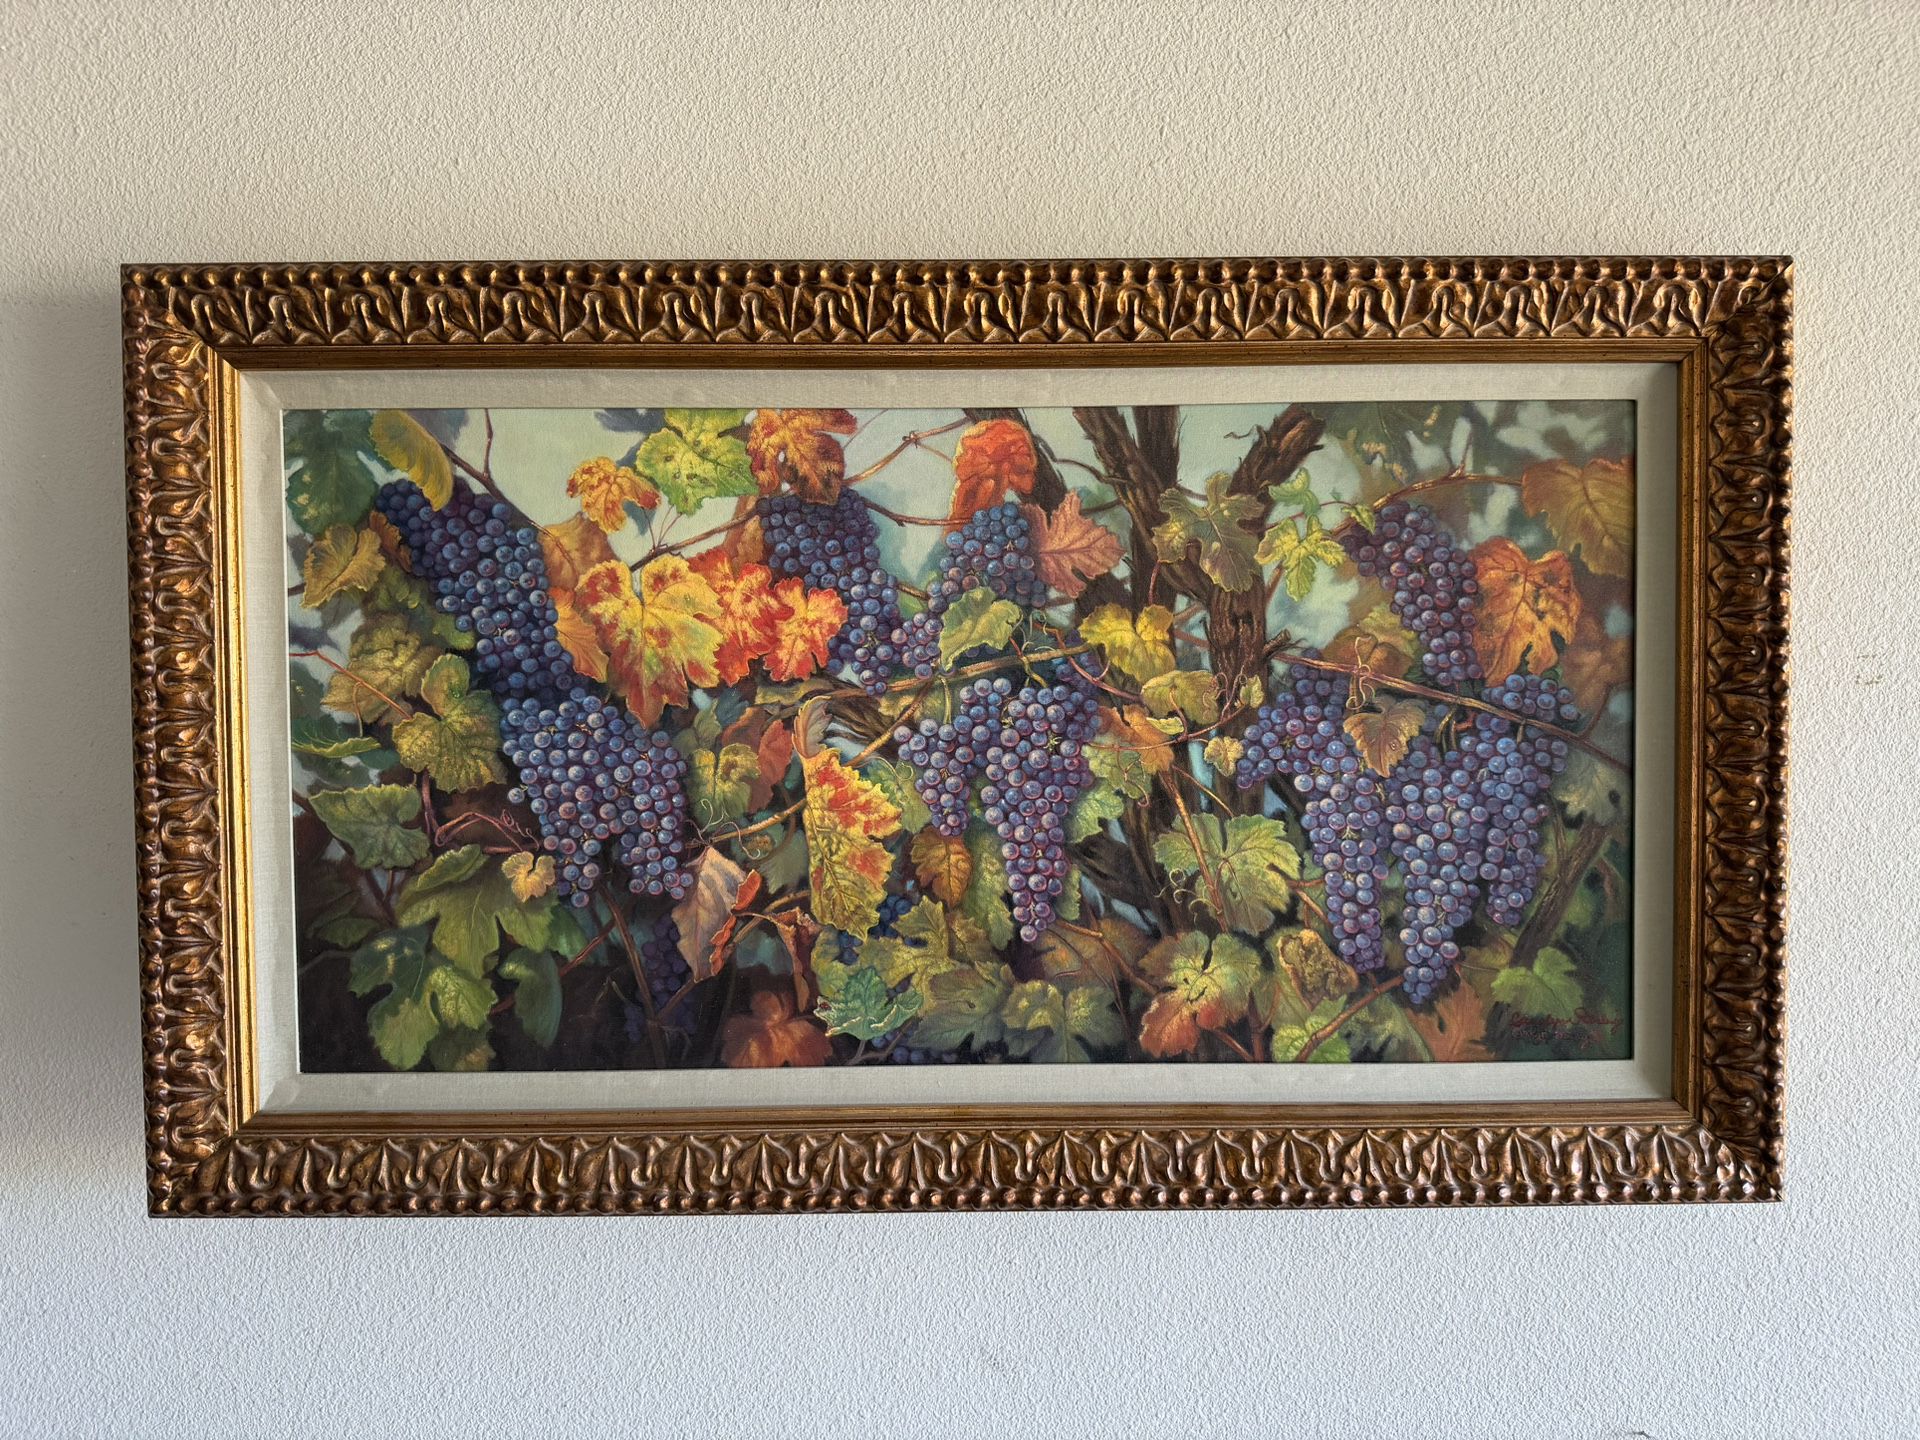 Artwork - Vineyard/grapes